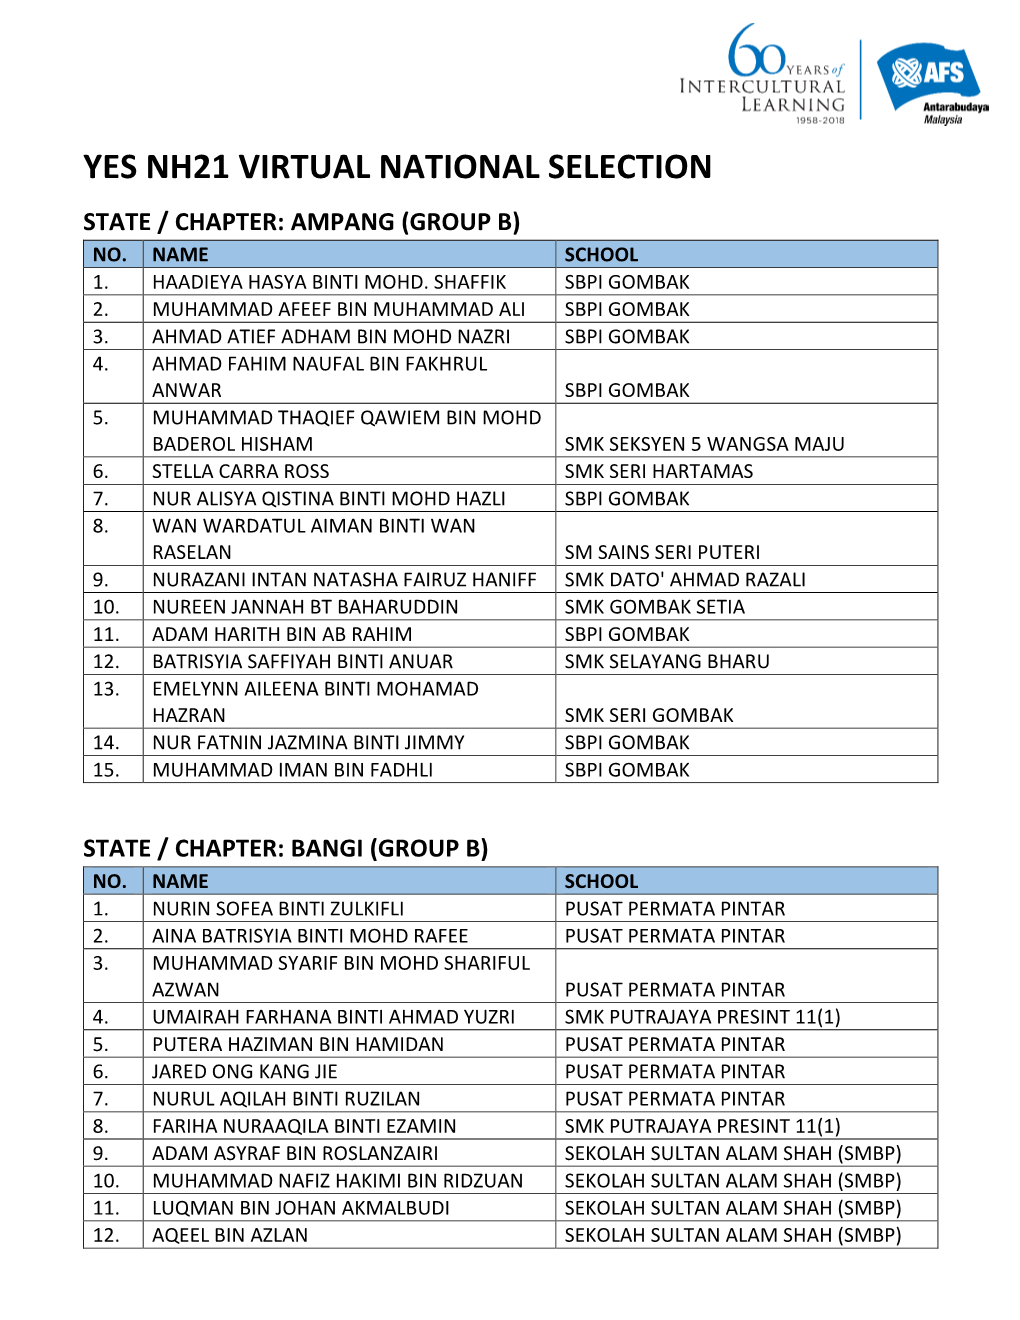 Yes Nh21 Virtual National Selection State / Chapter: Ampang (Group B) No